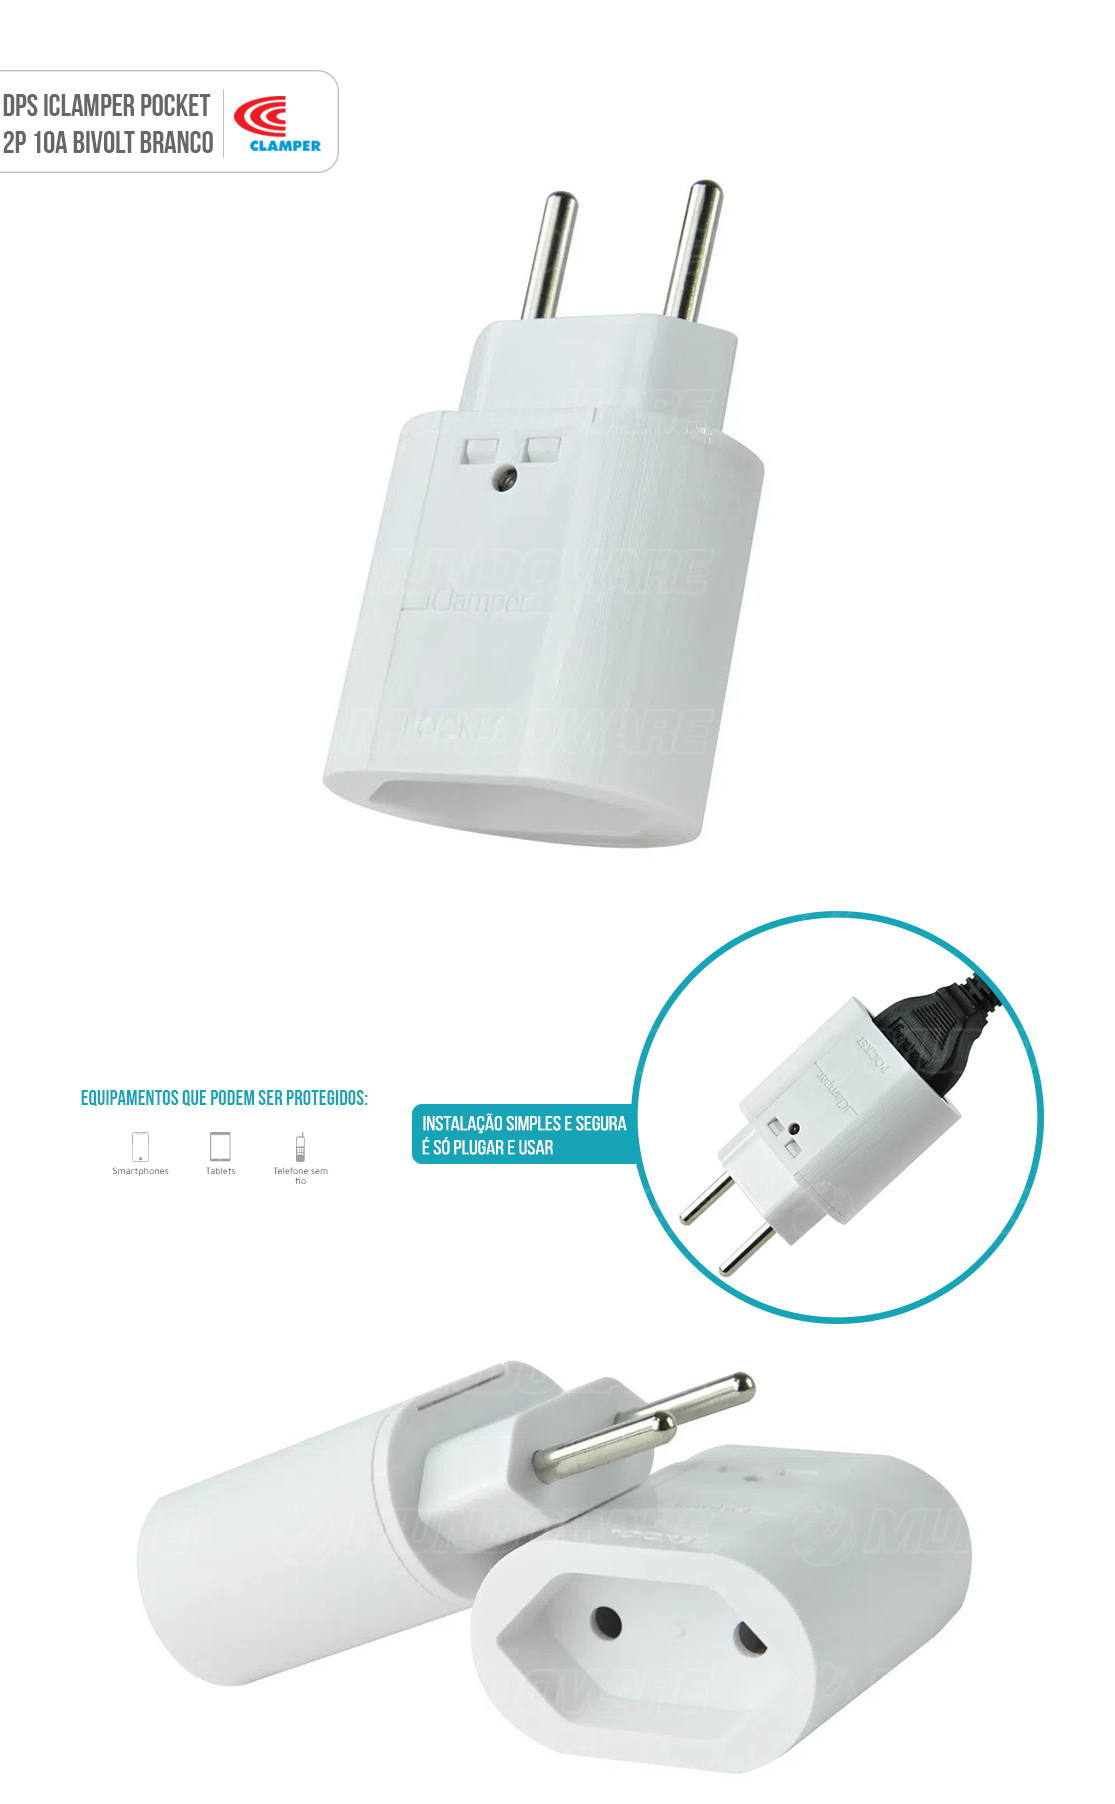 DPS iClamper Pocket 2 Pinos 10A Proteção contra Surtos Elétricos em Ambientes Sem Aterramento Clamper 2P Branco